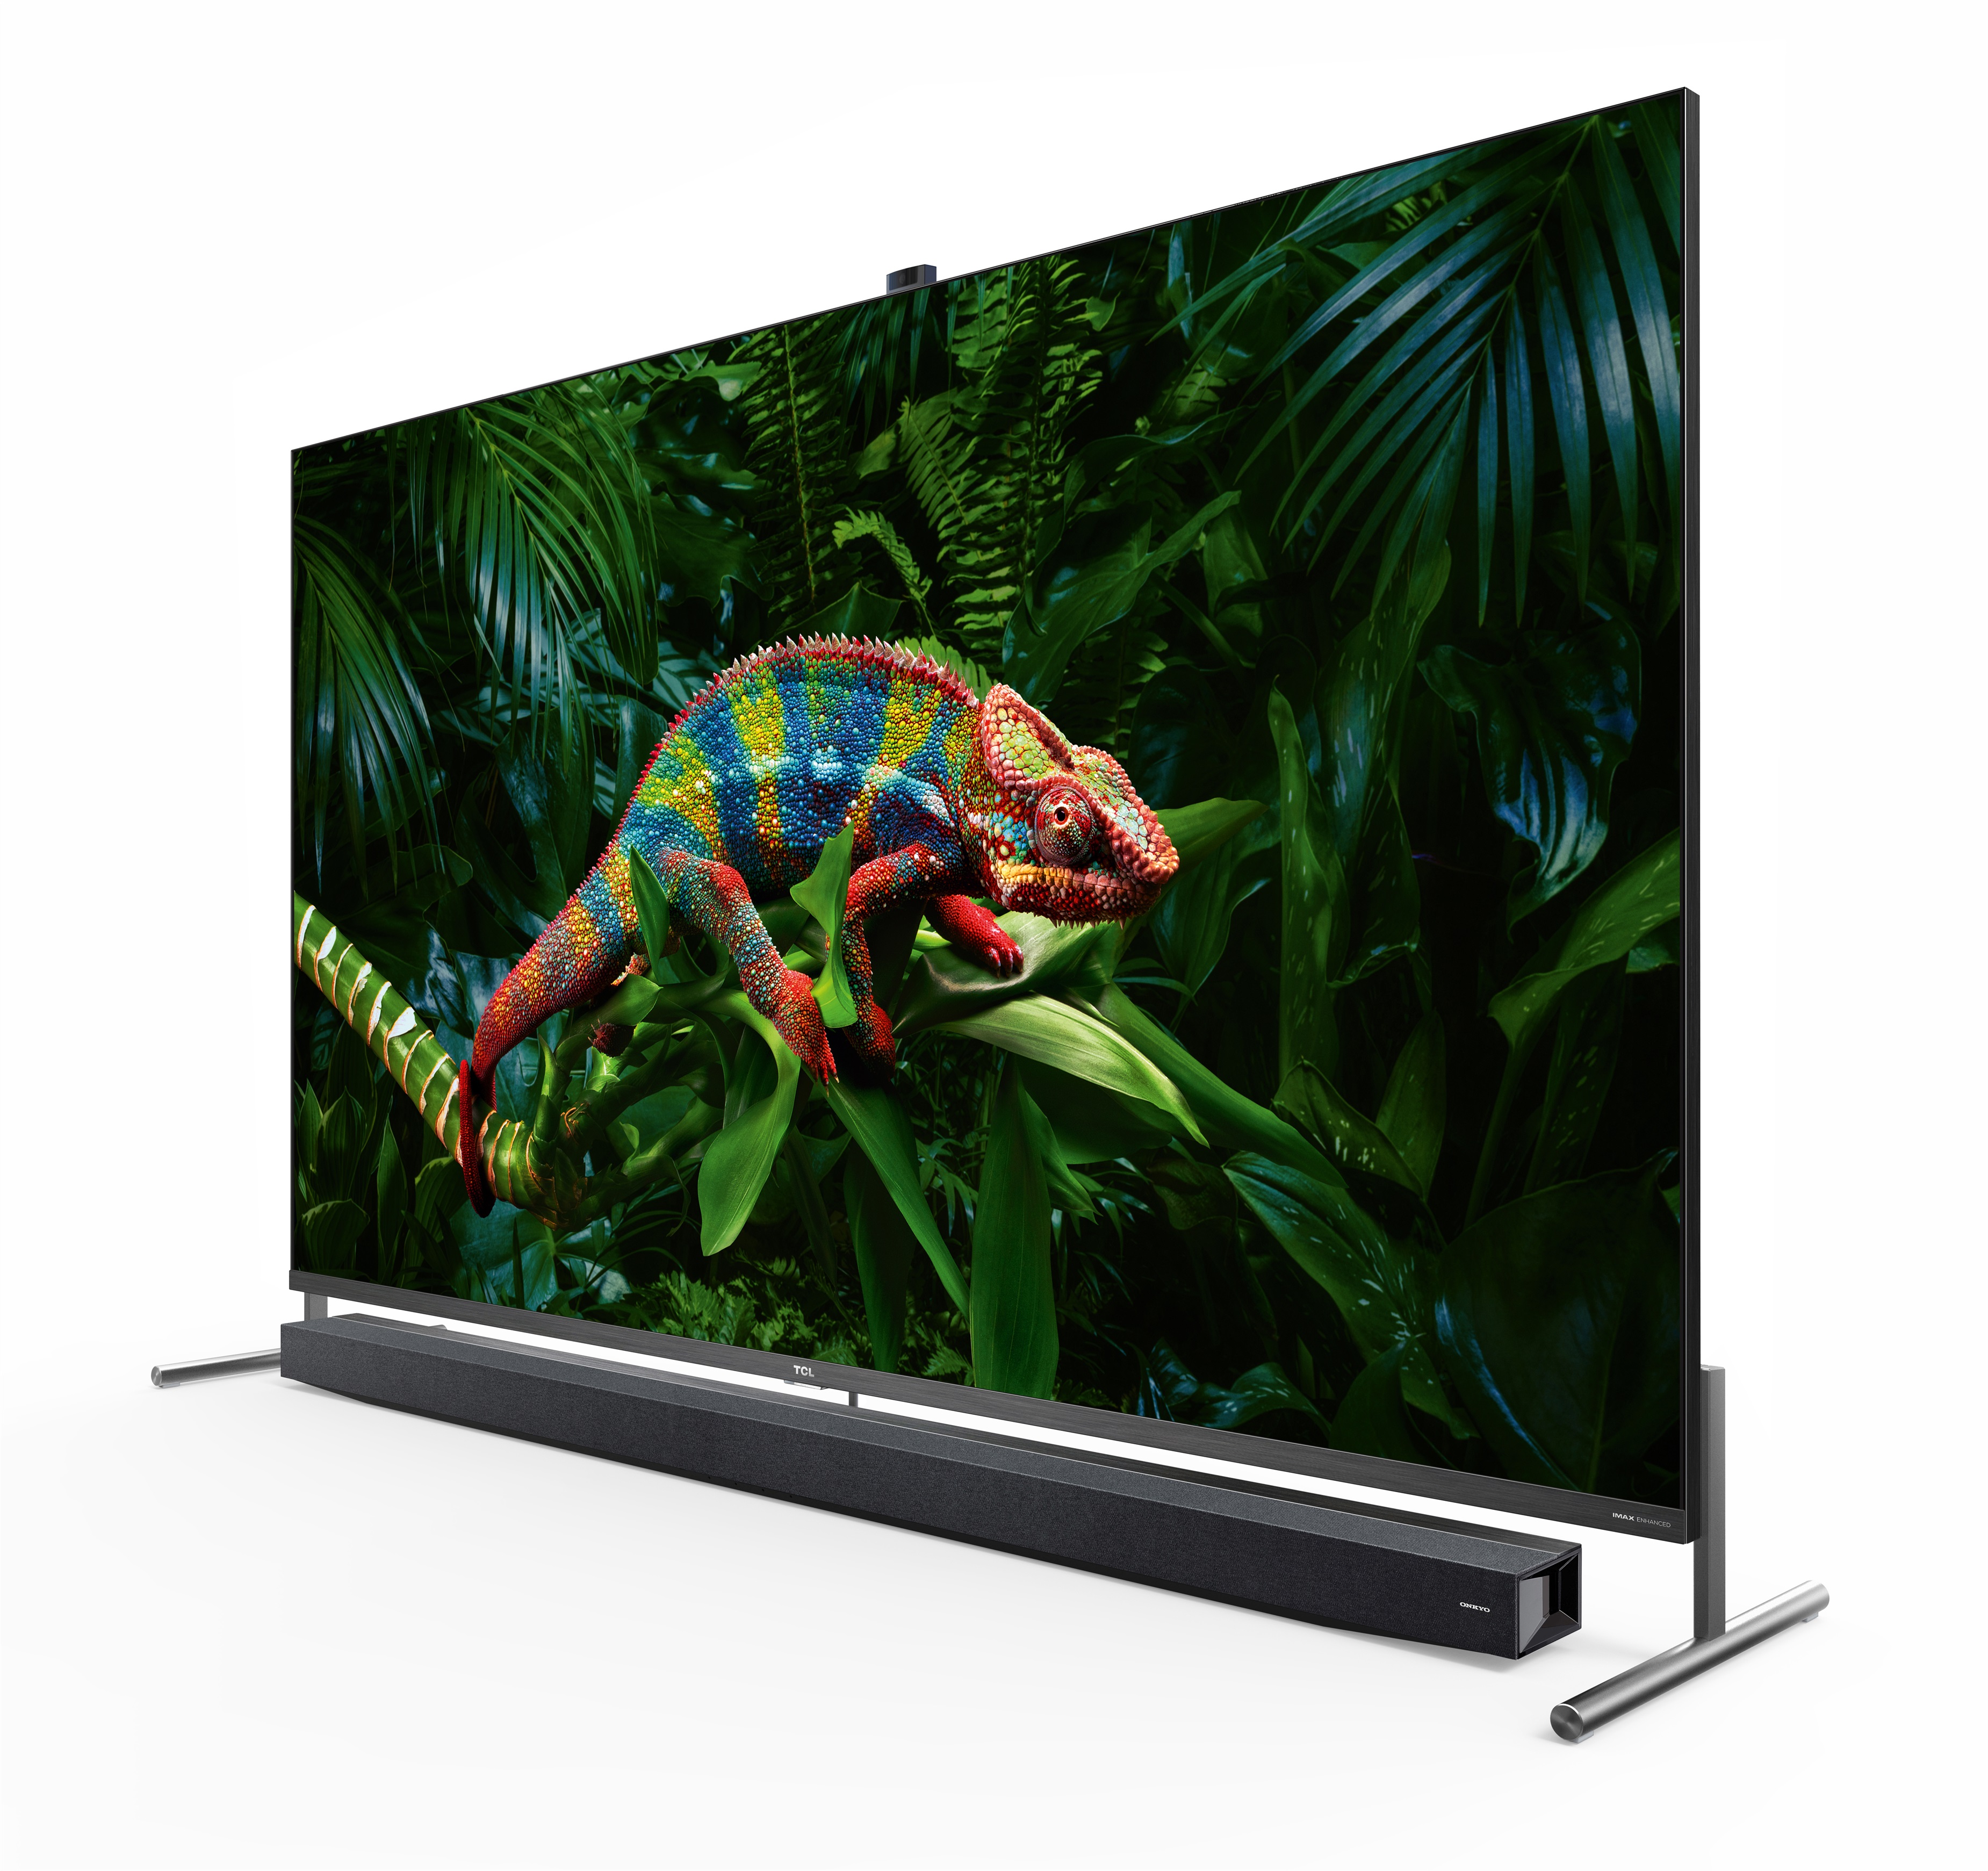 03/09/2020 Nueva televisión QLED 8K Android TV X915 de TCL
POLITICA 
TCL
